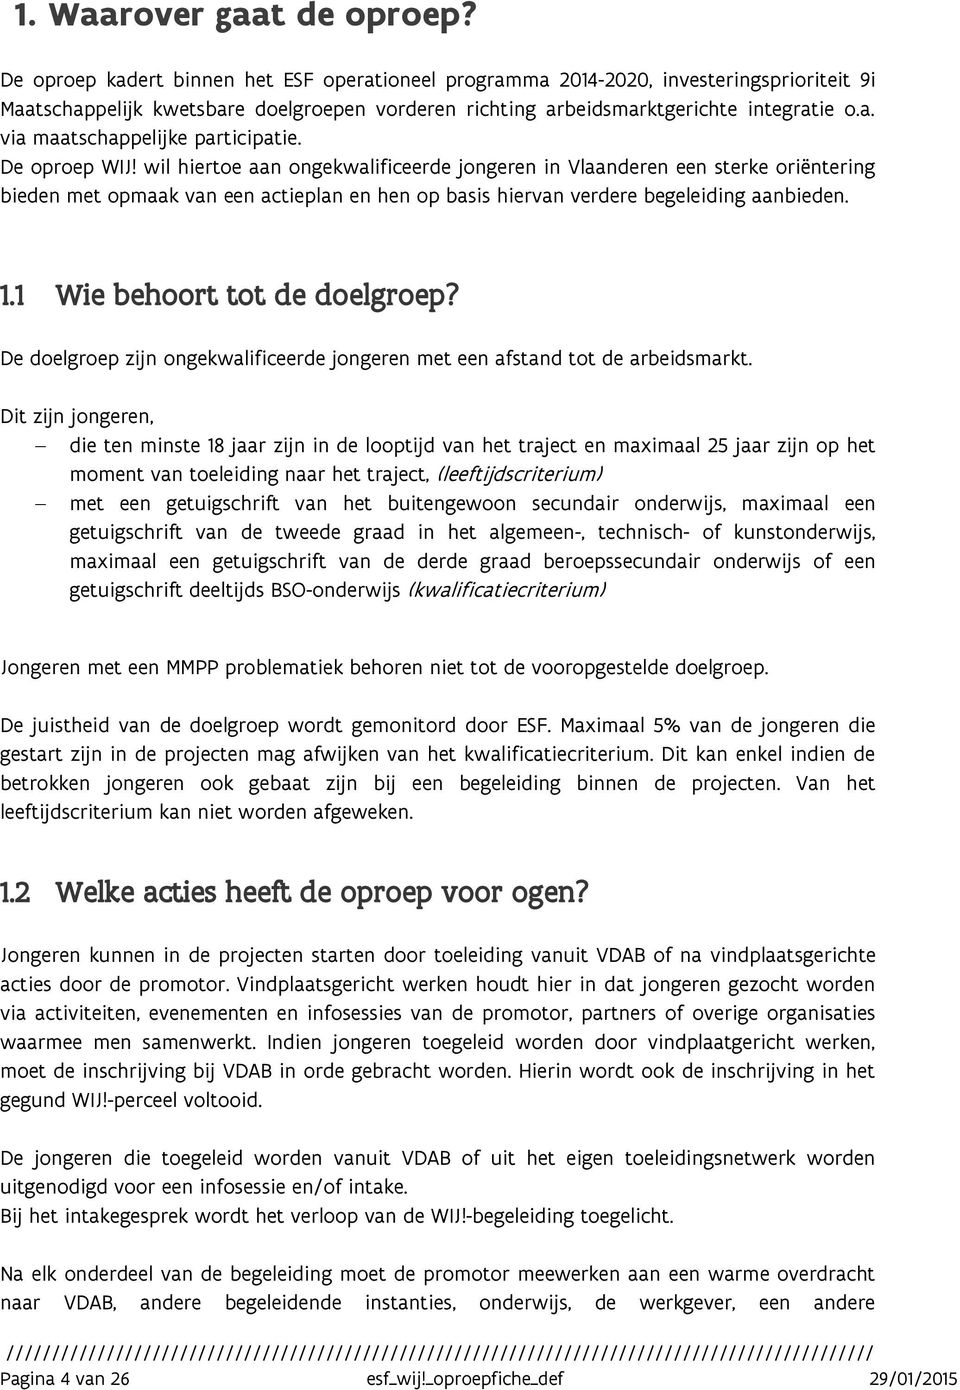 De oproep WIJ! wil hiertoe aan ongekwalificeerde jongeren in Vlaanderen een sterke oriëntering bieden met opmaak van een actieplan en hen op basis hiervan verdere begeleiding aanbieden. 1.